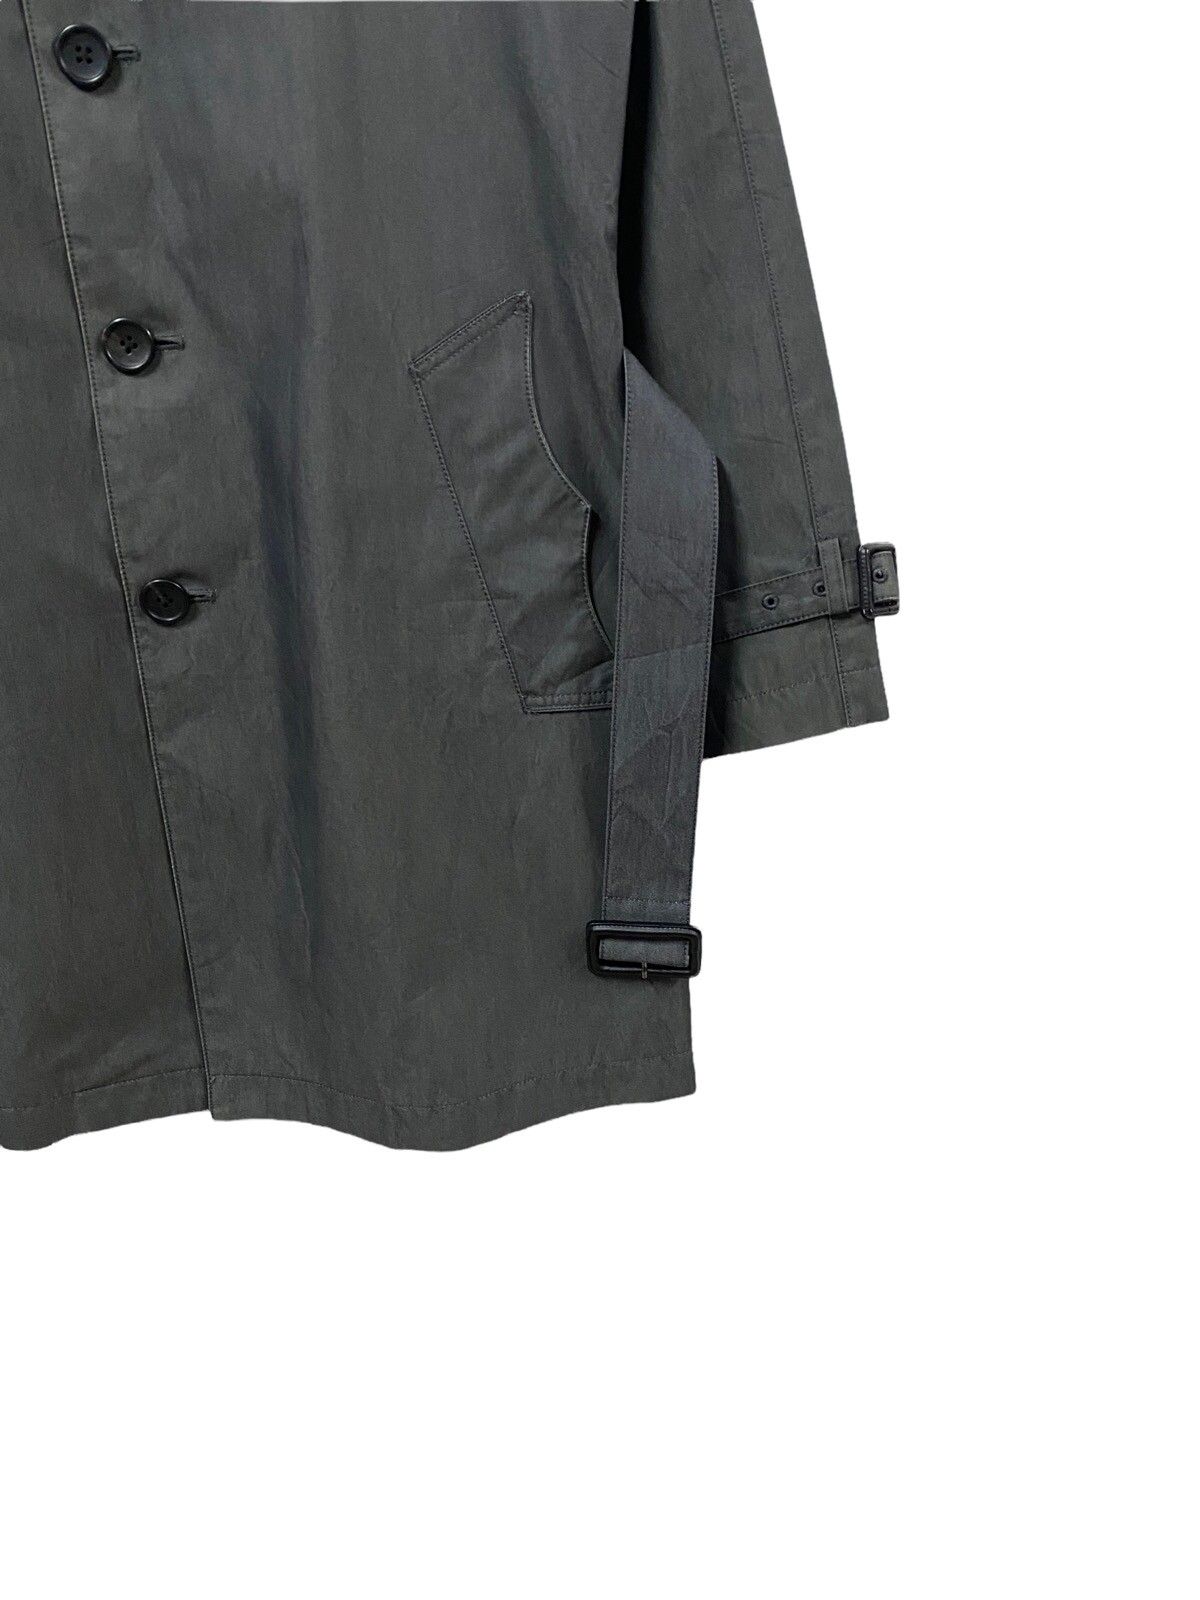 PS Paul Smith Trech Coat Grey Jacket - 8